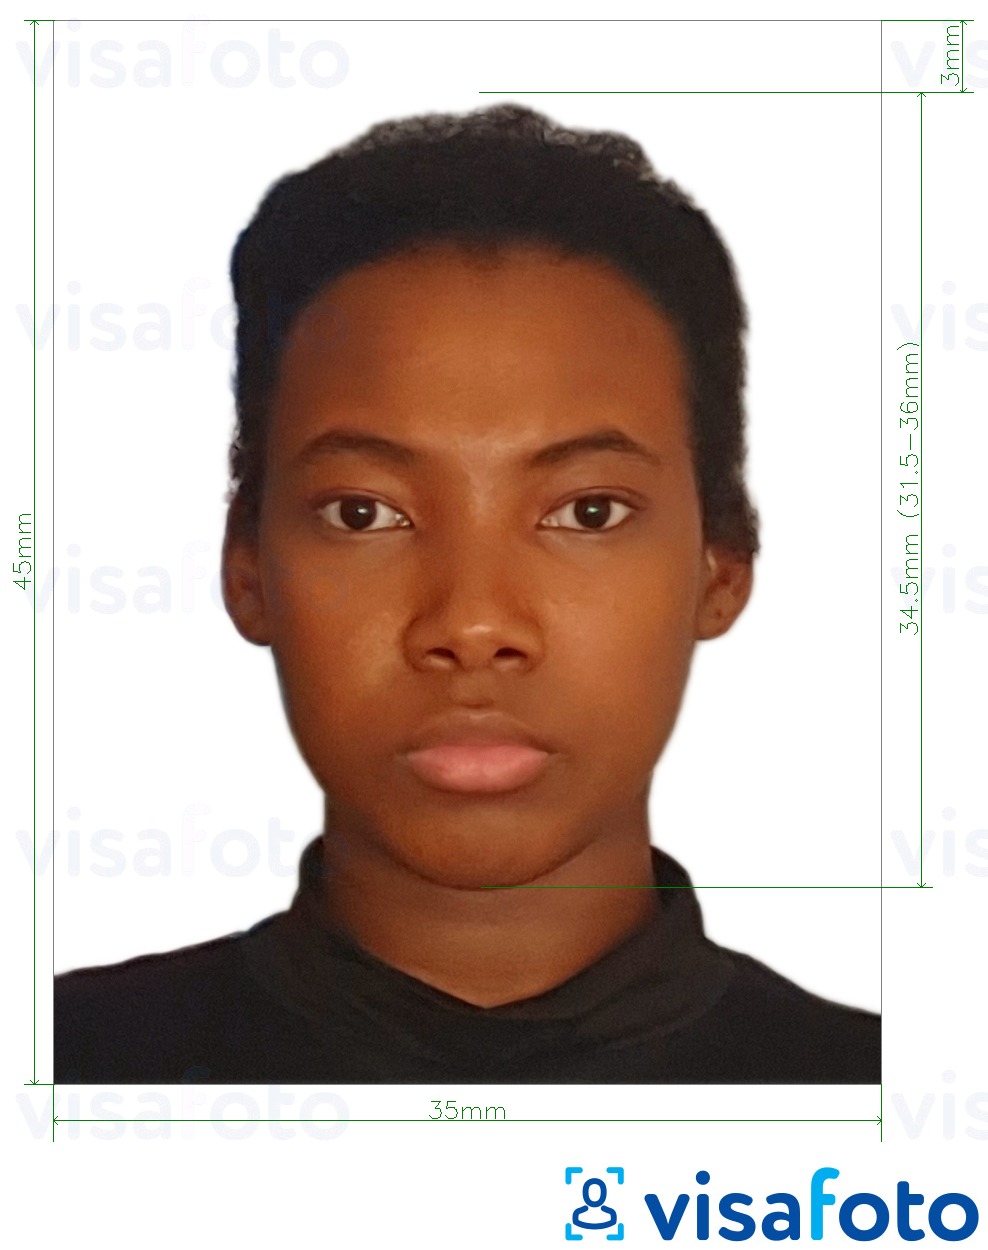 सटीक आकार विनिर्देश के साथ बेनिन पासपोर्ट 3.5x4.5 सेमी (35x45 मिमी) के लिए तस्वीर का उदाहरण